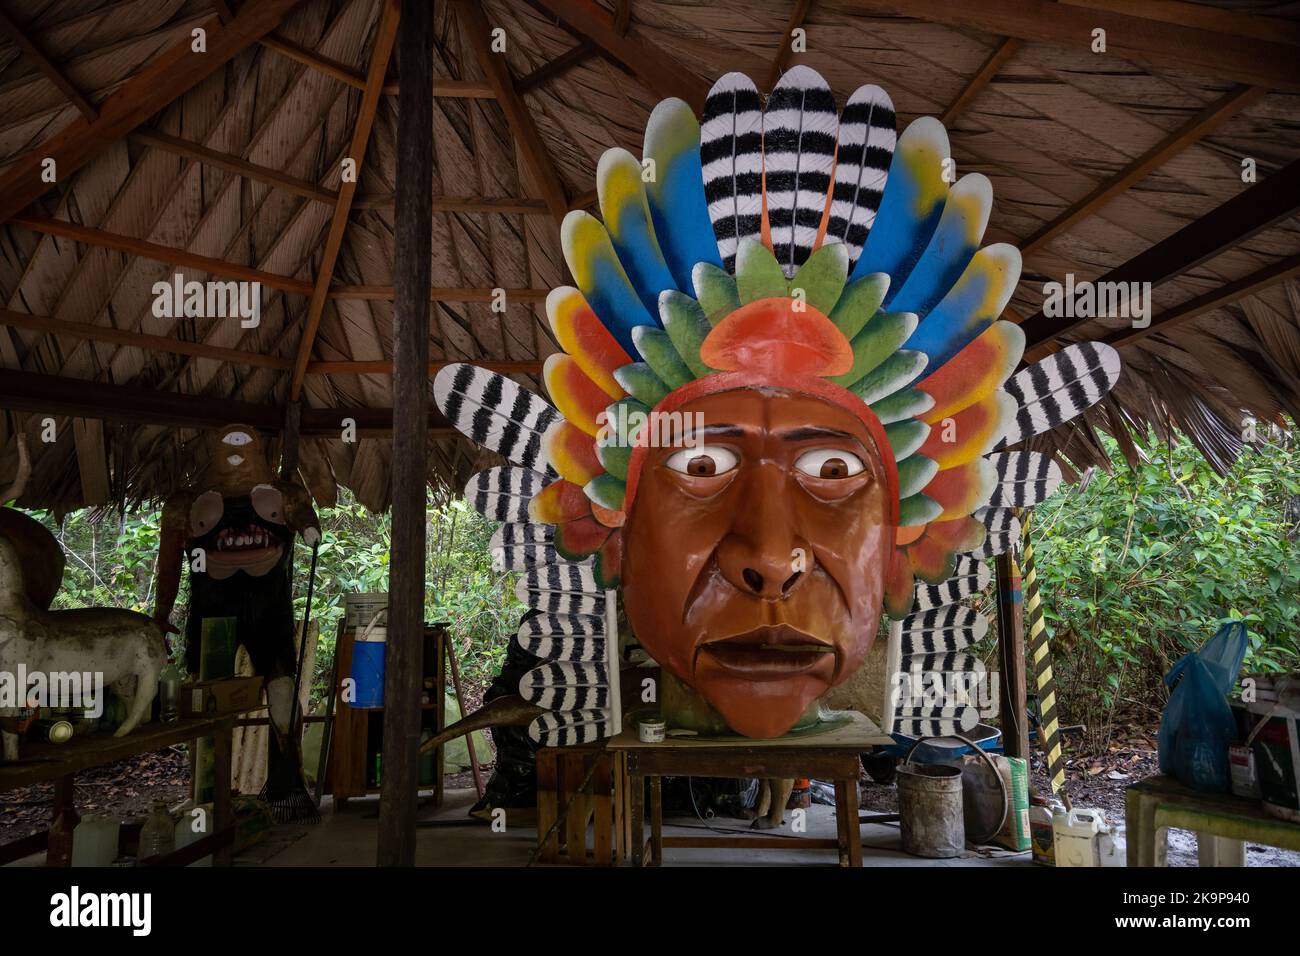 Ausgefallene Dekorationen in einem Waldpark, eine riesige Kopfschuppung indigener Völker. Amazonas, Brasilien Stockfoto